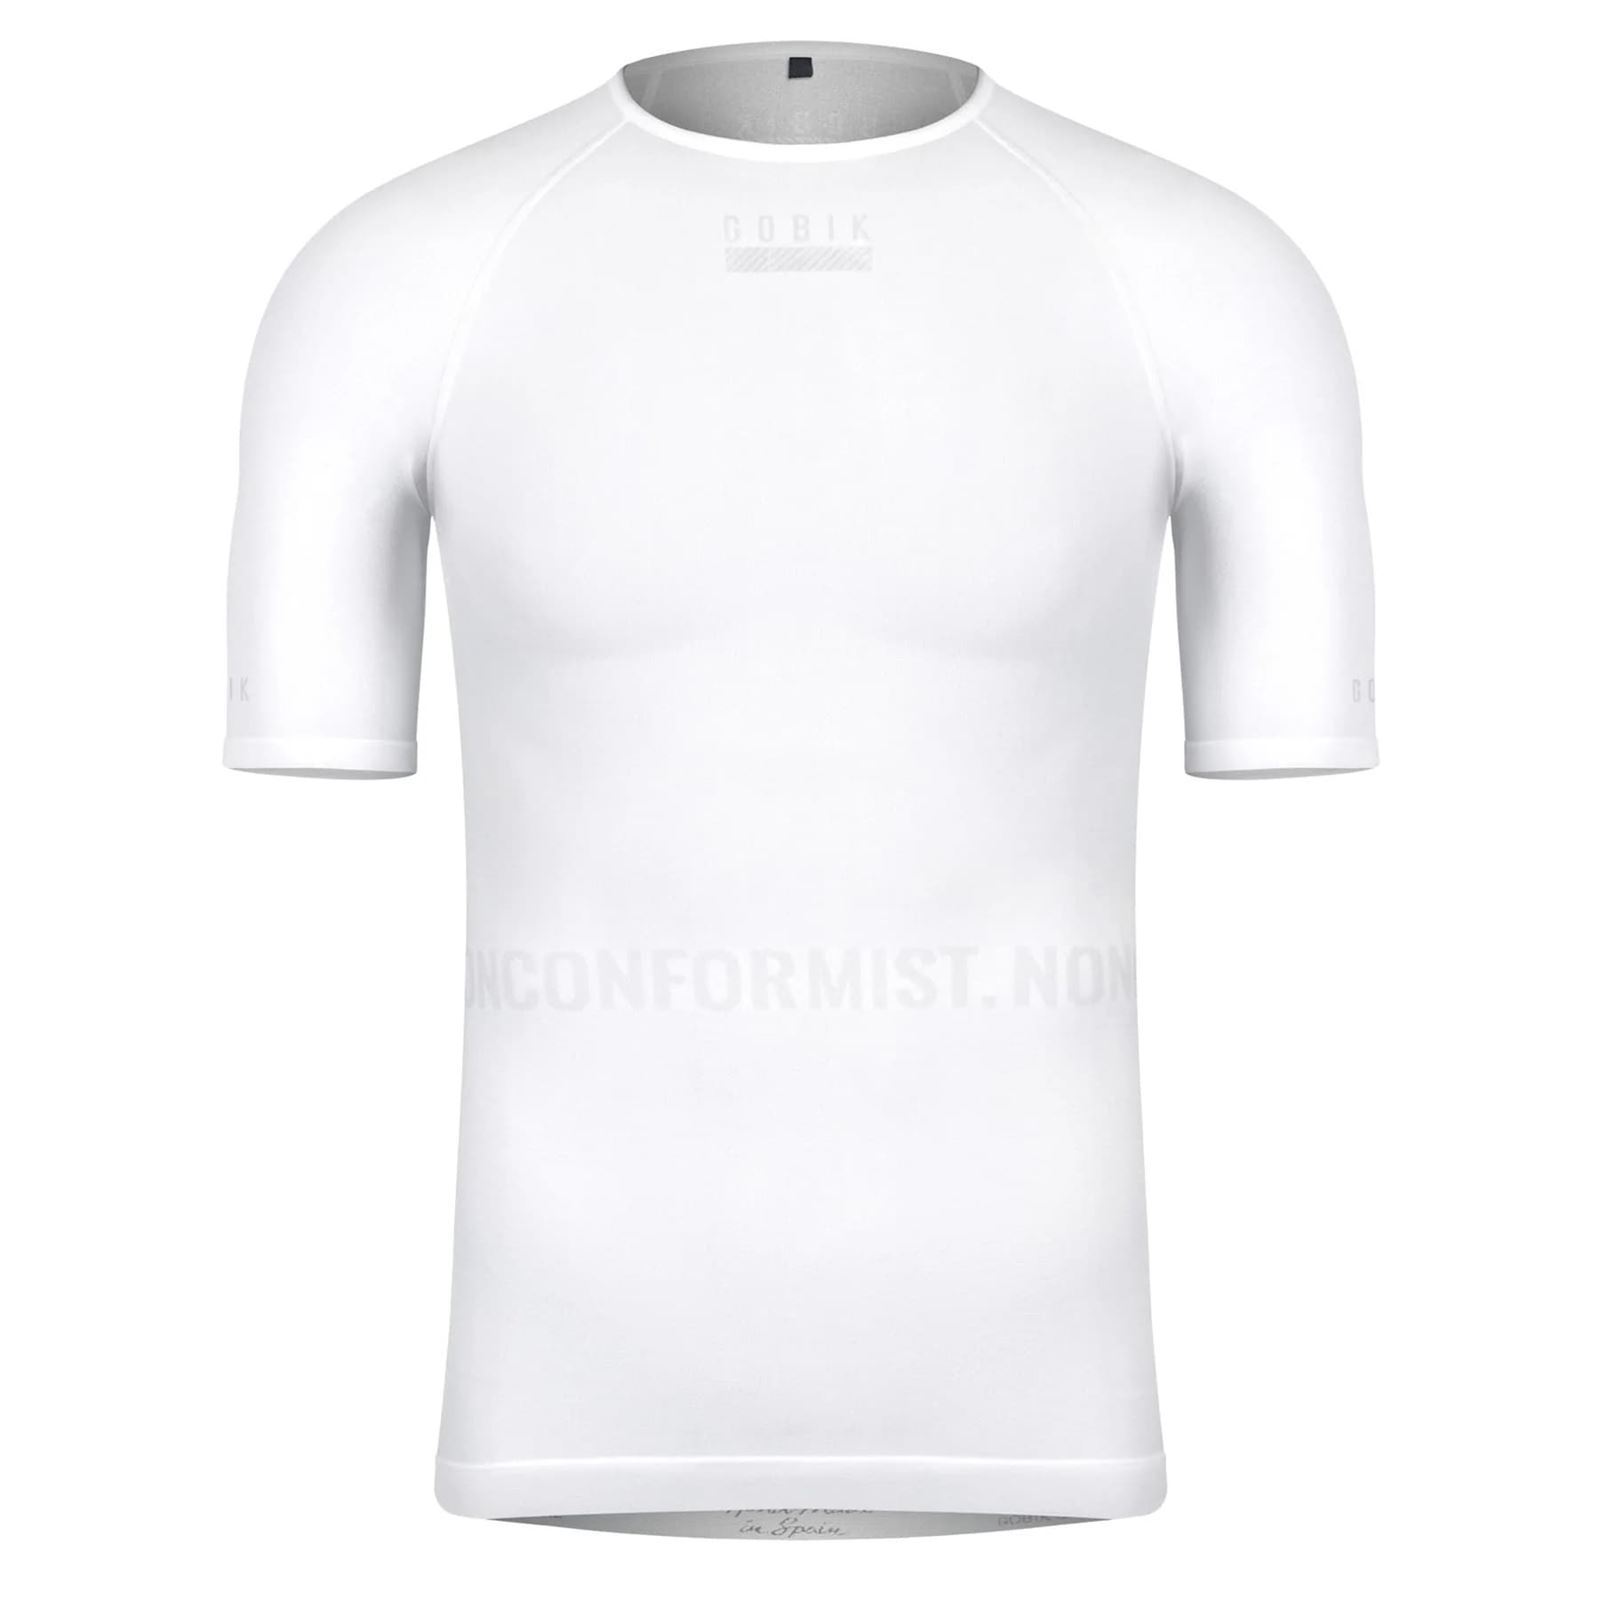 Camiseta interior térmica manga corta en fibra de hombre